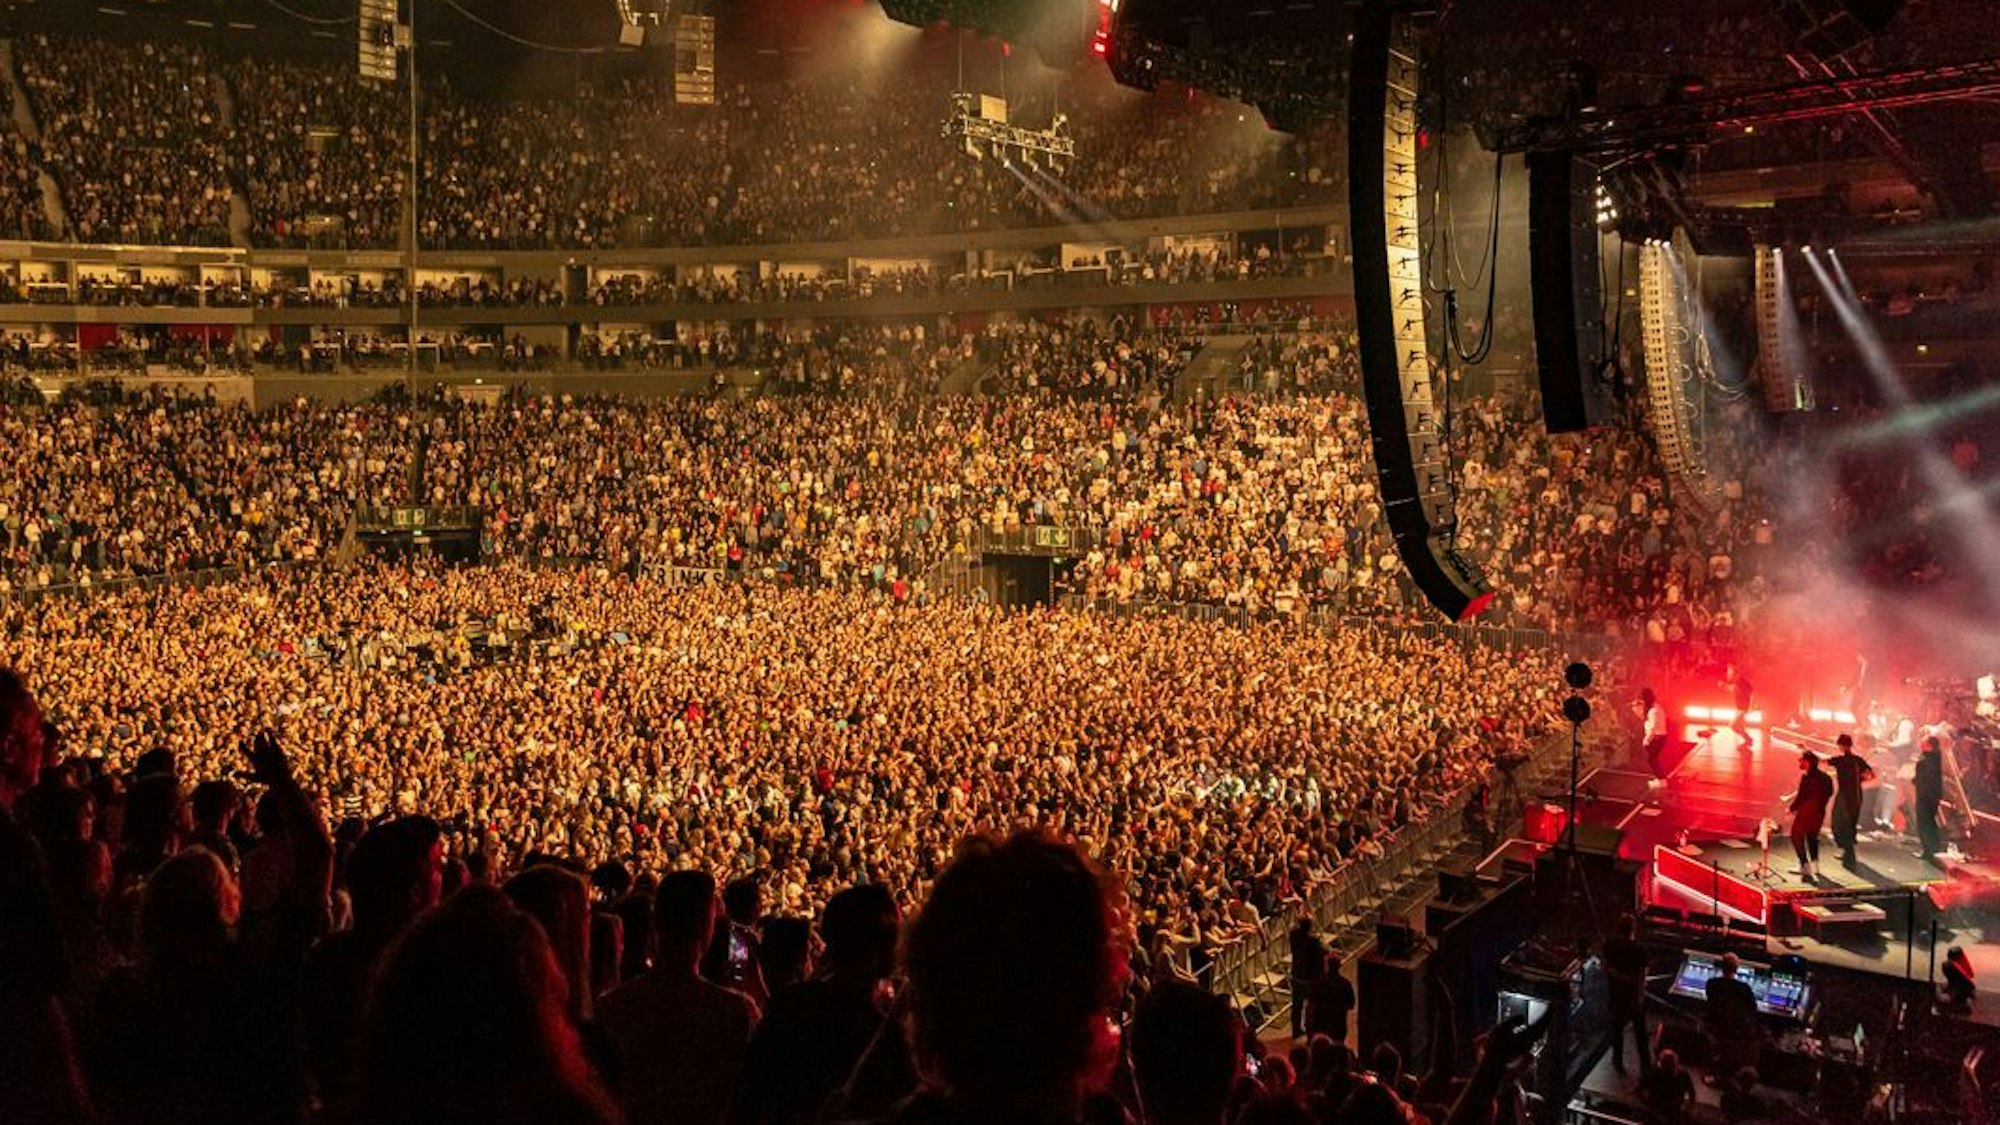 Überblick über die ganze Lanxess-Arena in Köln bei einem Auftritt von Seeed.